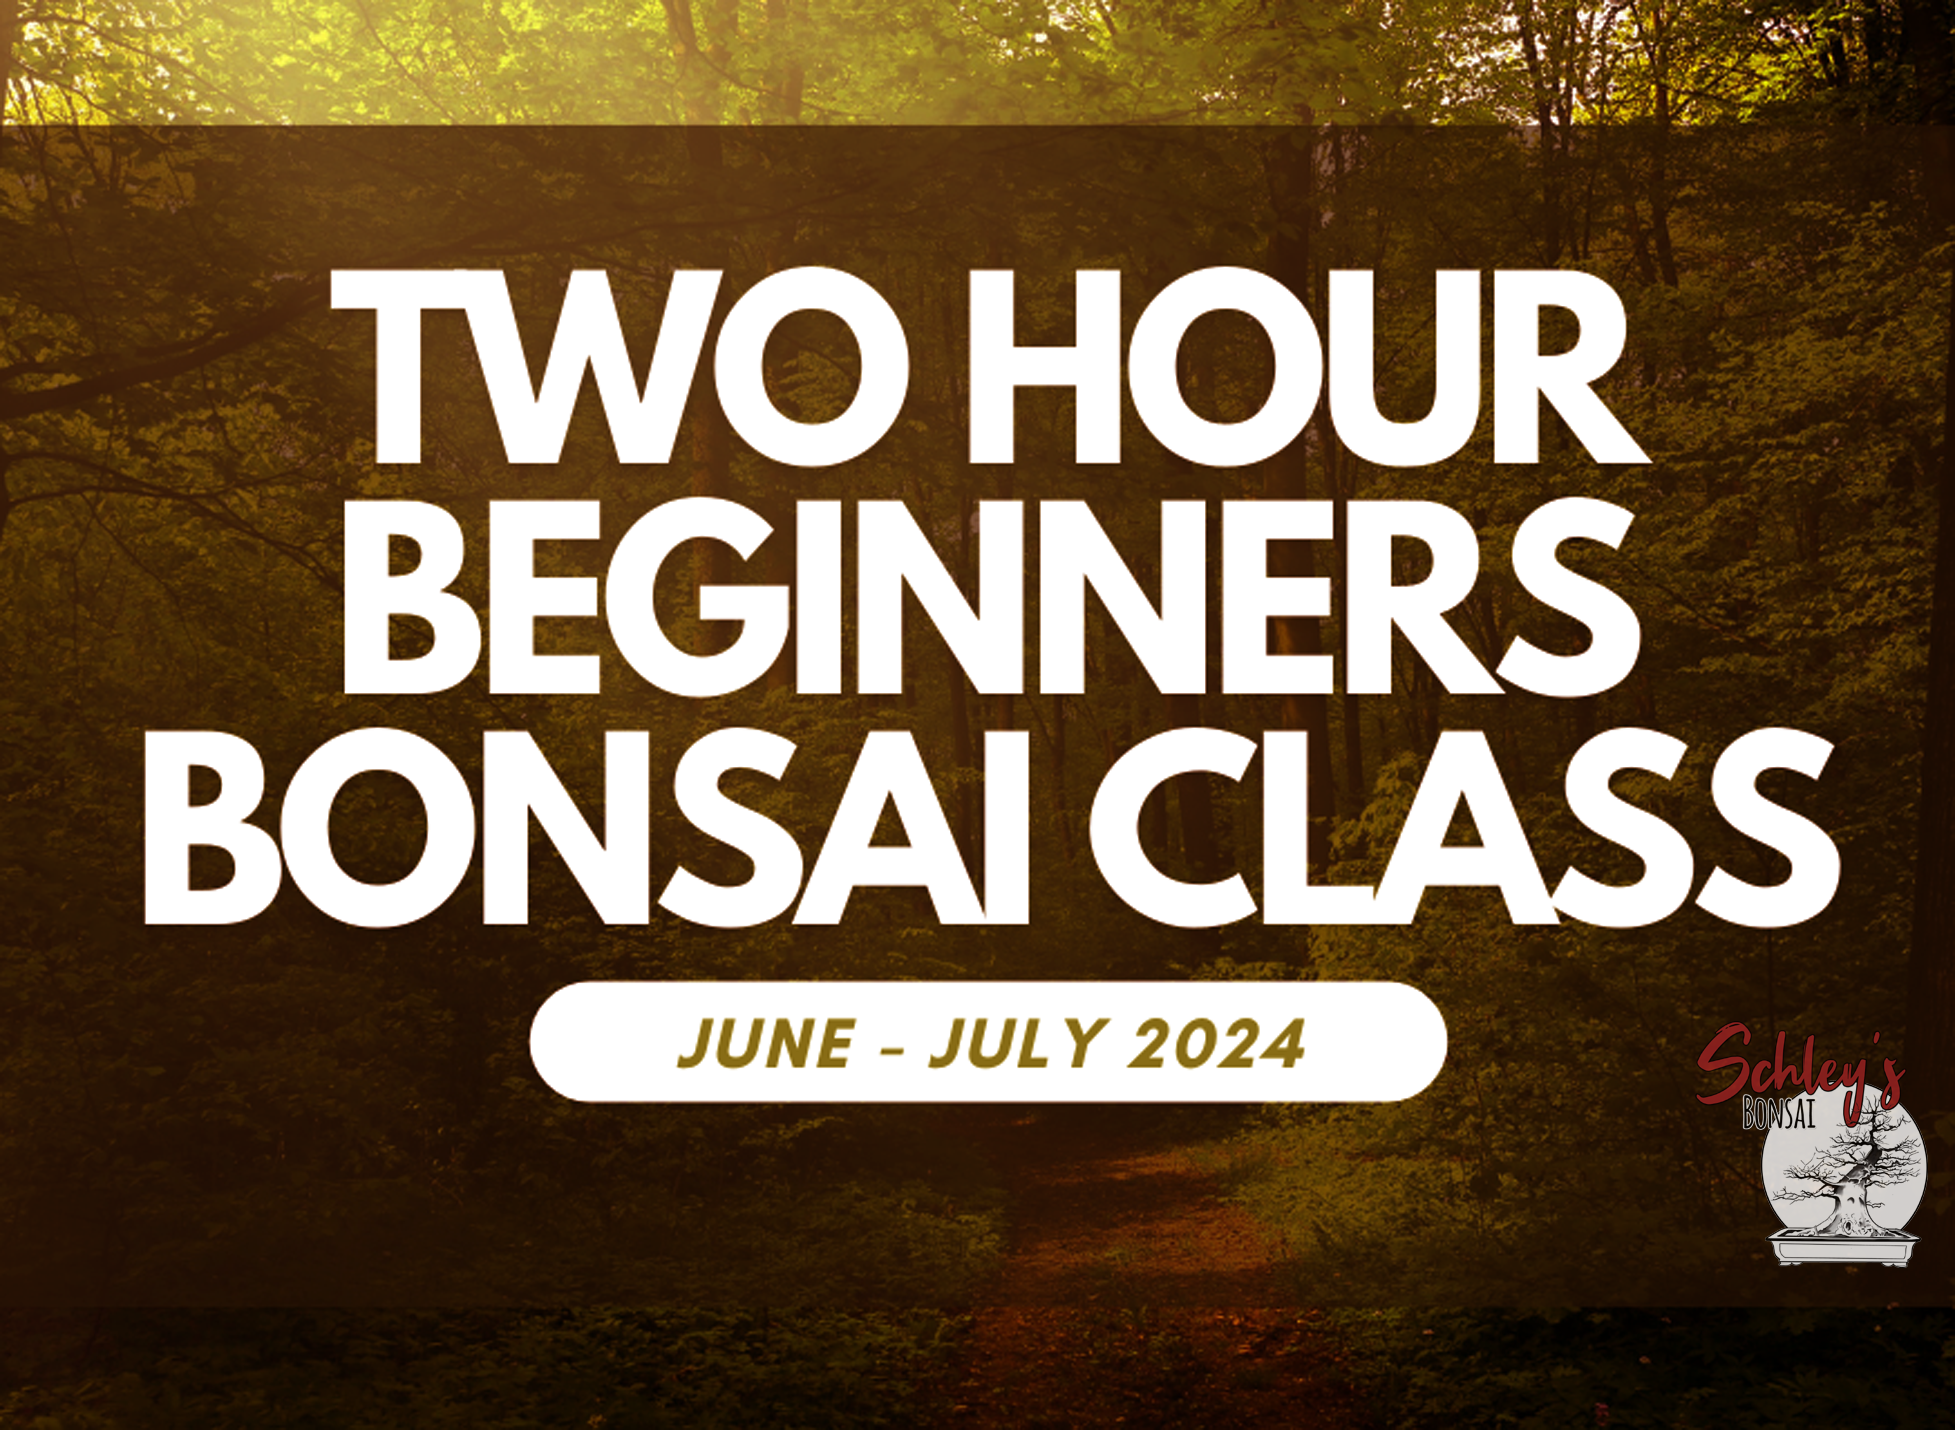 Two Hour Beginners Bonsai Class 9AM - 11AM